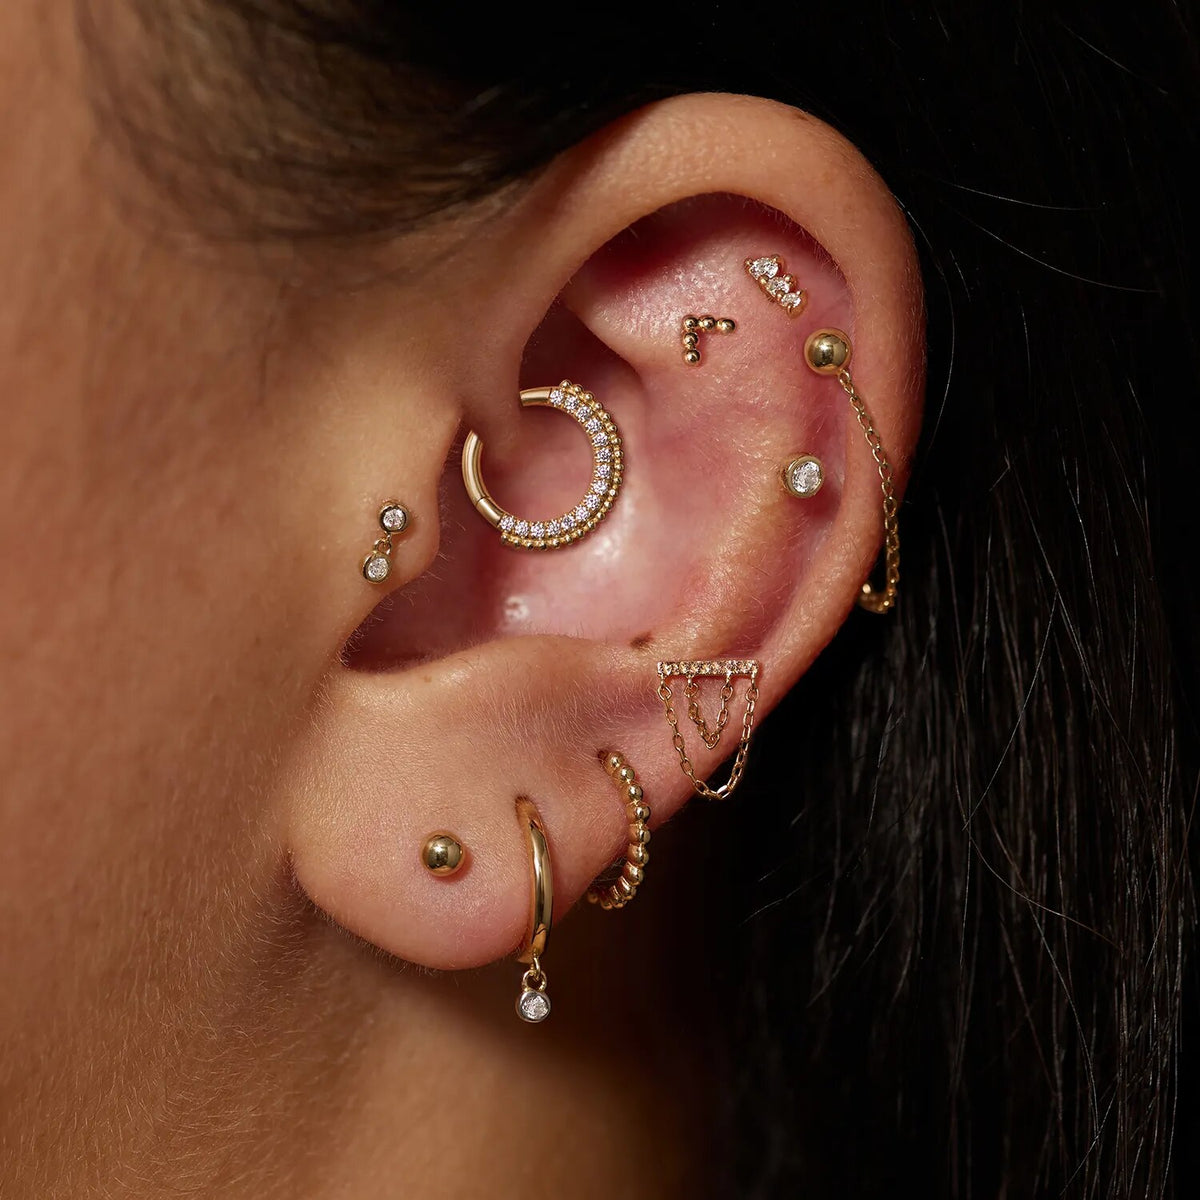 Boucle d’oreille hélix en or 14K avec chaînes boucles d’oreilles conque piercing lobe d’oreille bijoux labret stud